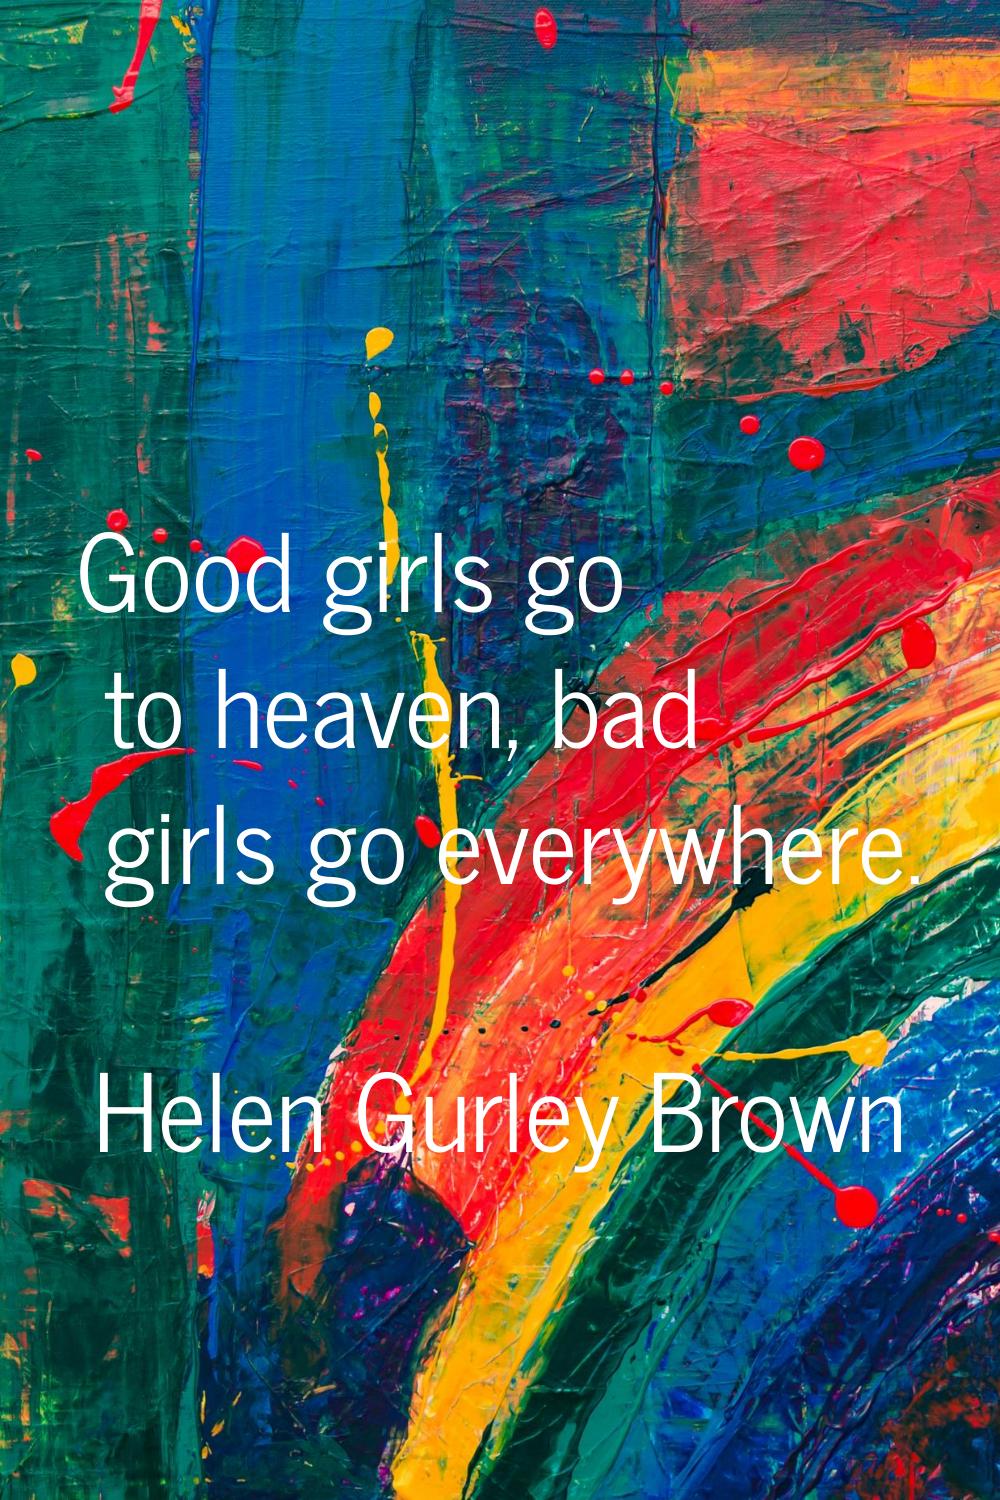 Good girls go to heaven, bad girls go everywhere.